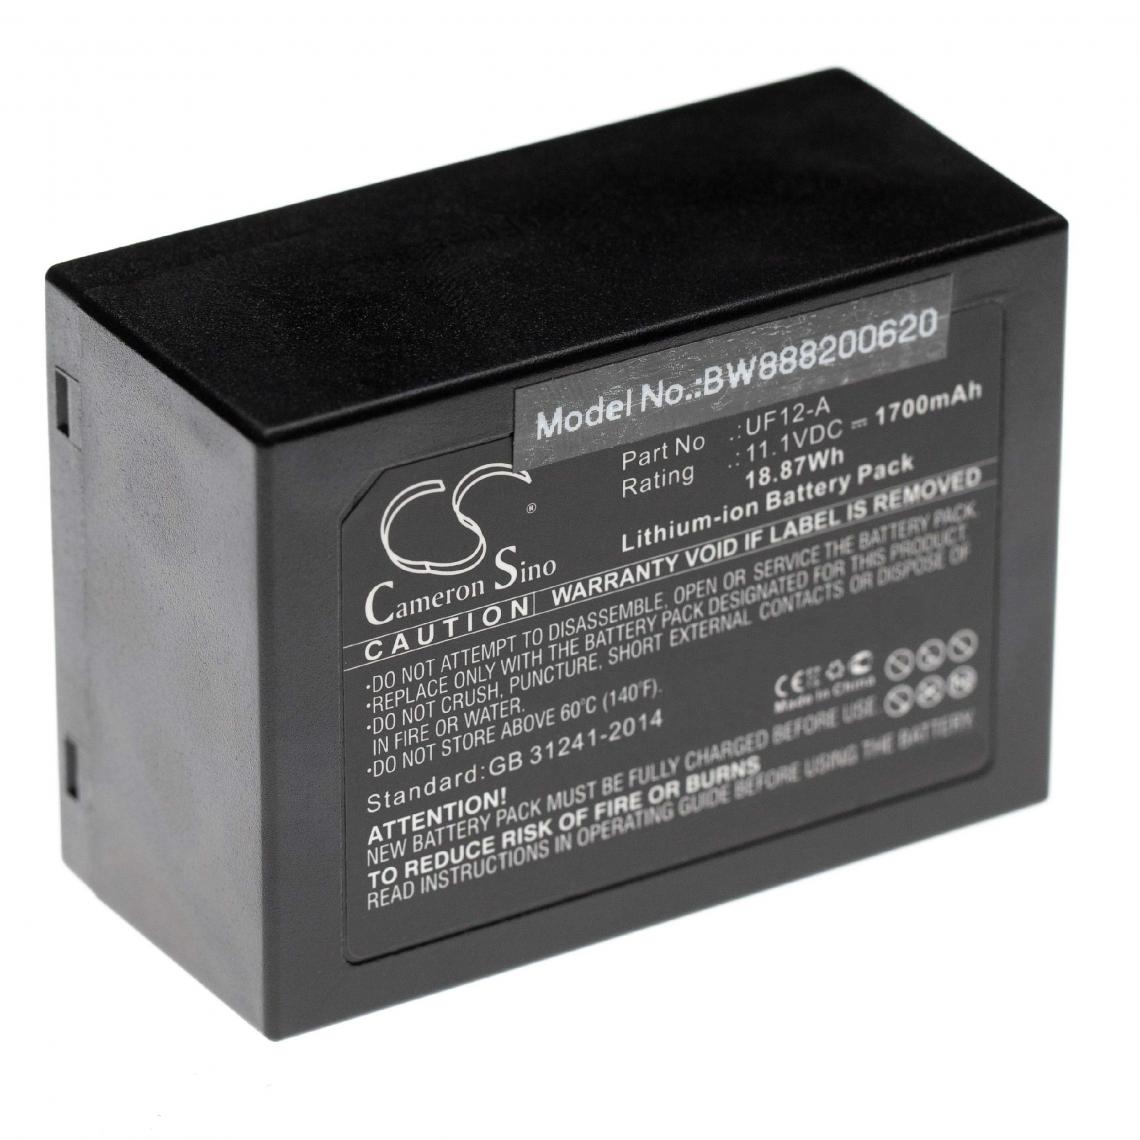 Vhbw - vhbw batterie remplace Palm LP-1920A pour appareil de médecine comme thermocycleur (1700mAh, 11.1V, Li-Ion) - Piles spécifiques